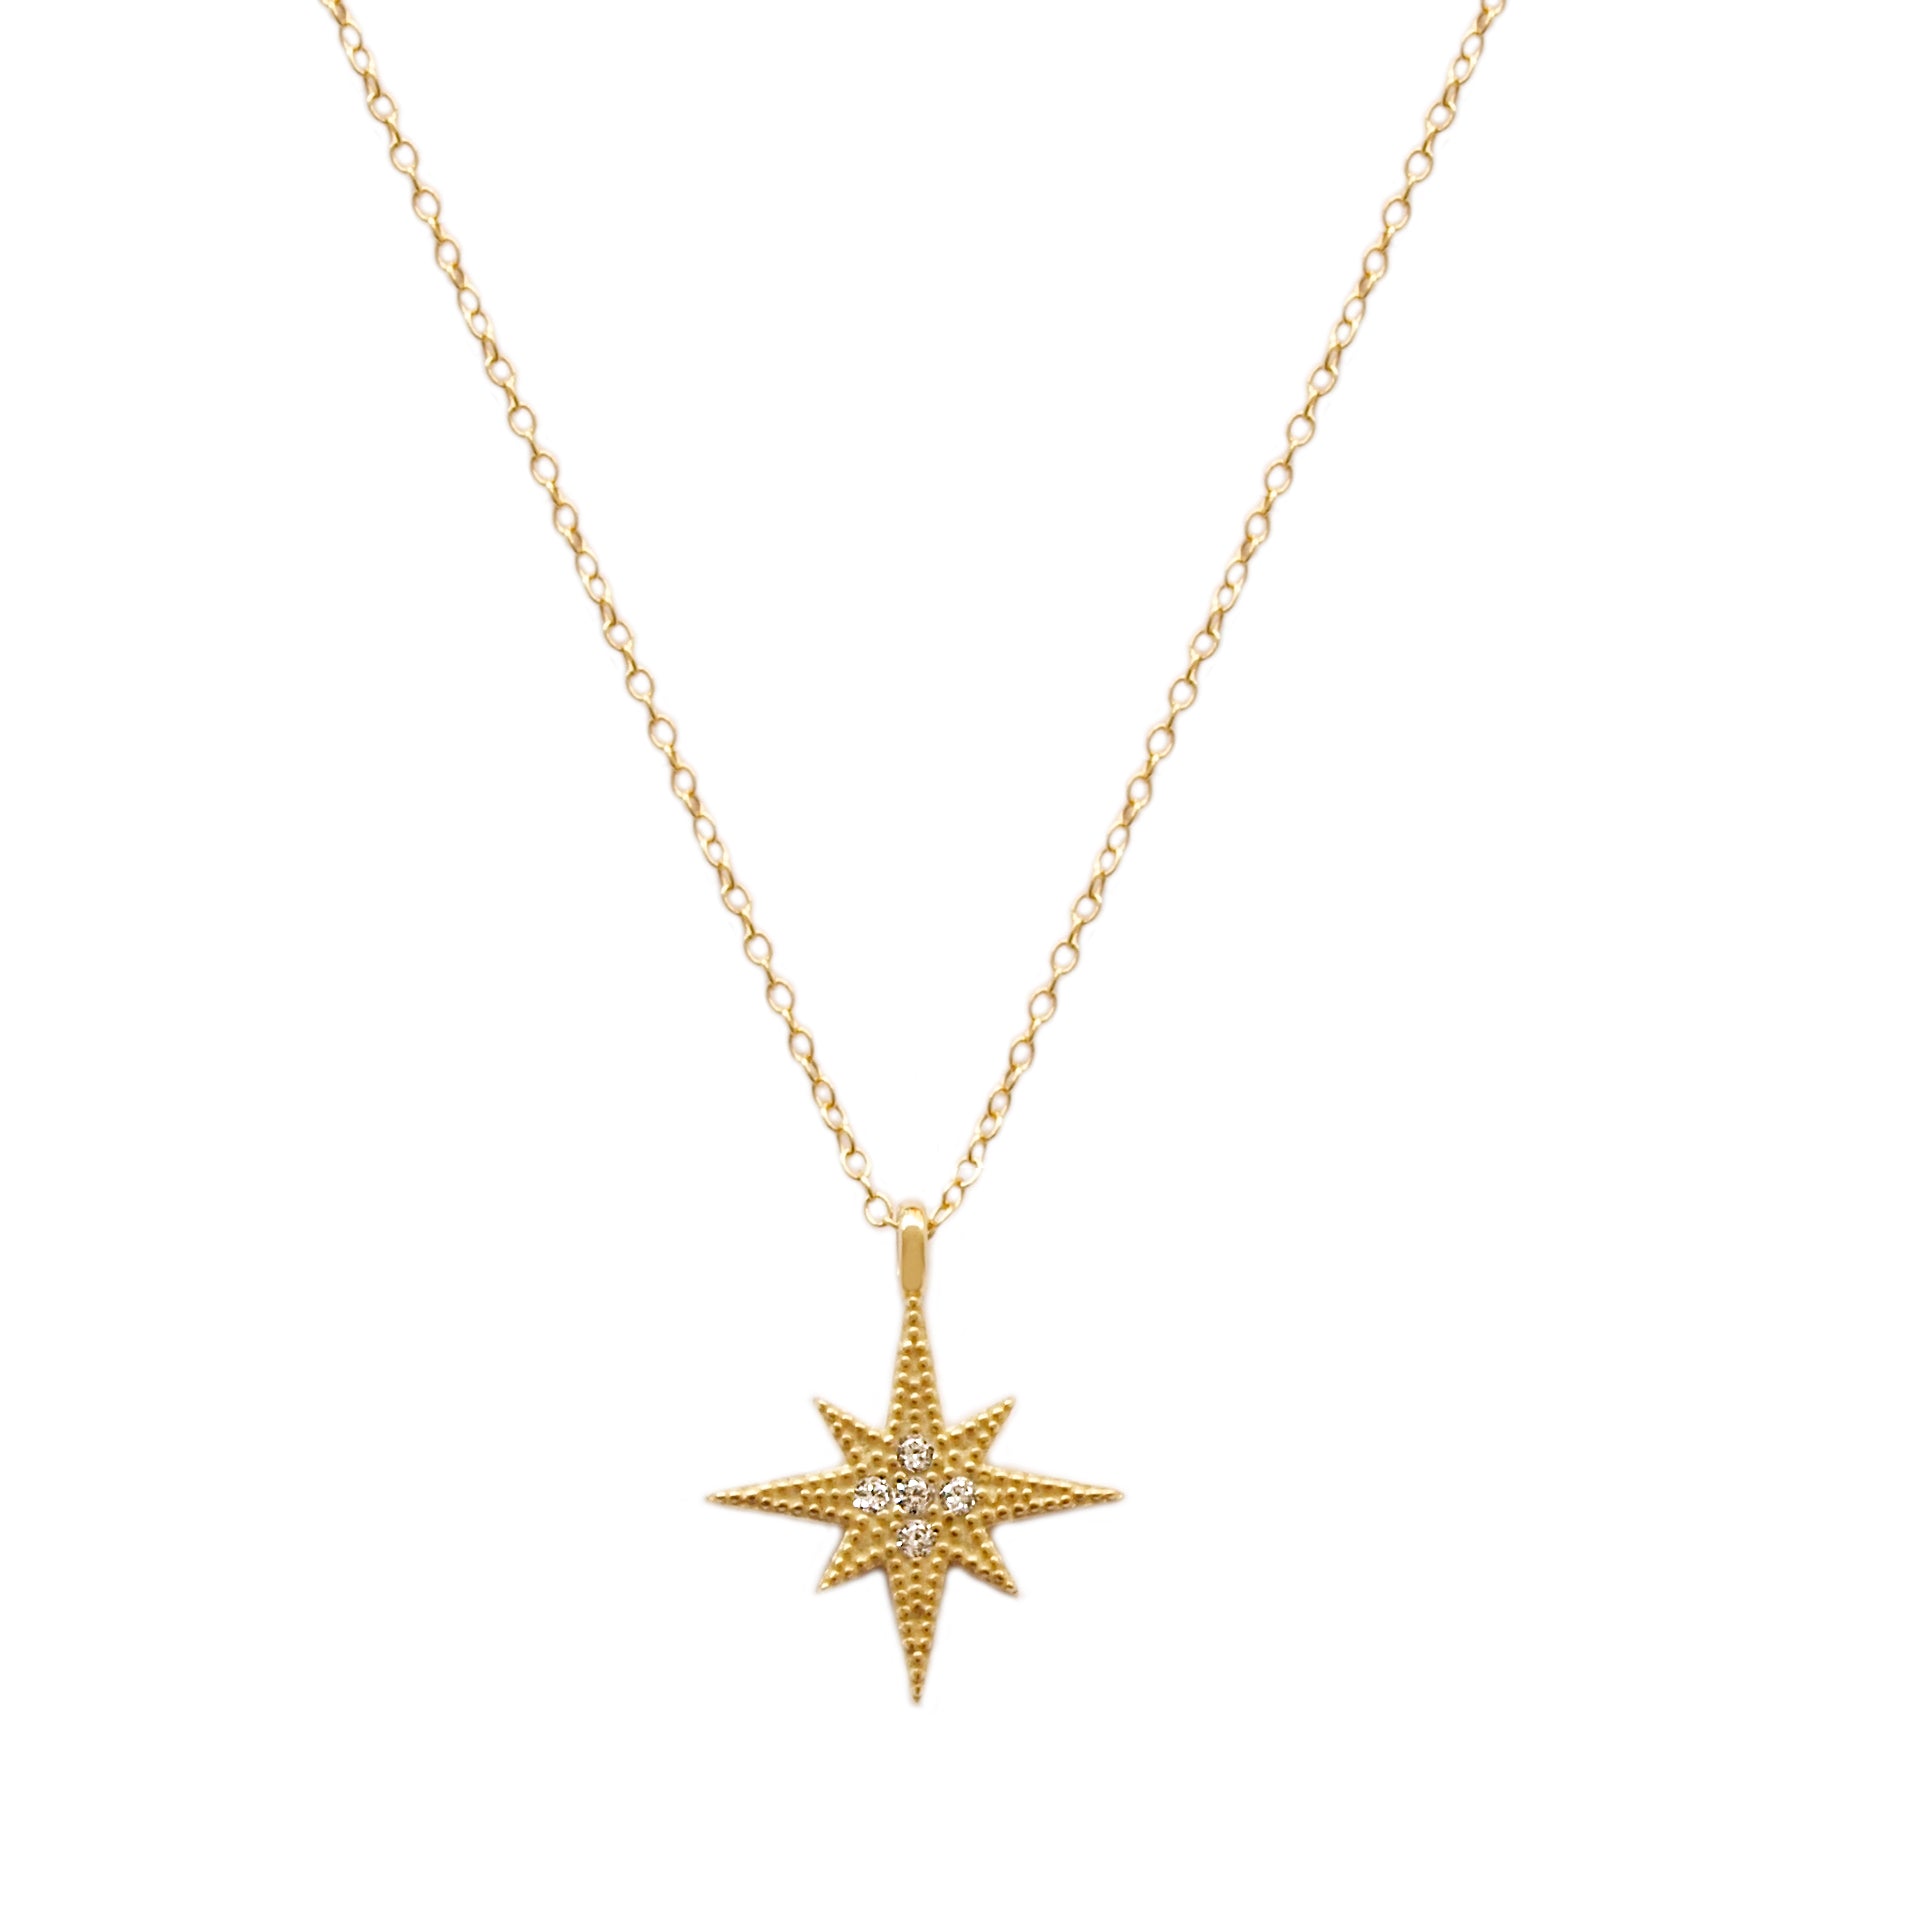 Big star gold - ByMirelae